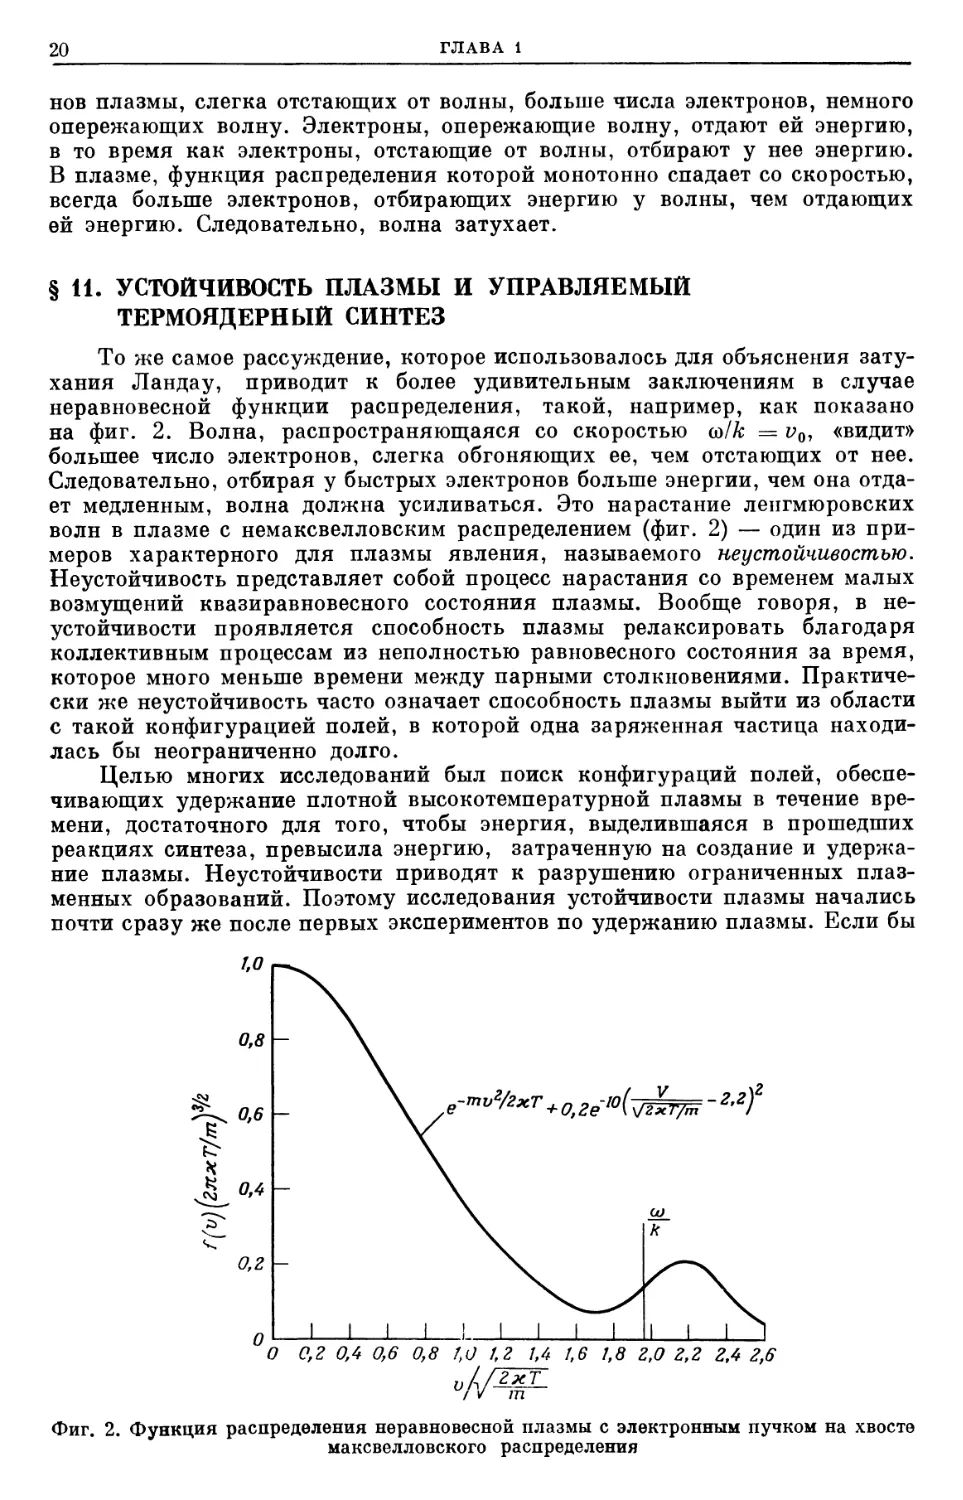 § 11. Устойчивость плазмы и управляемый термоядерный синтез